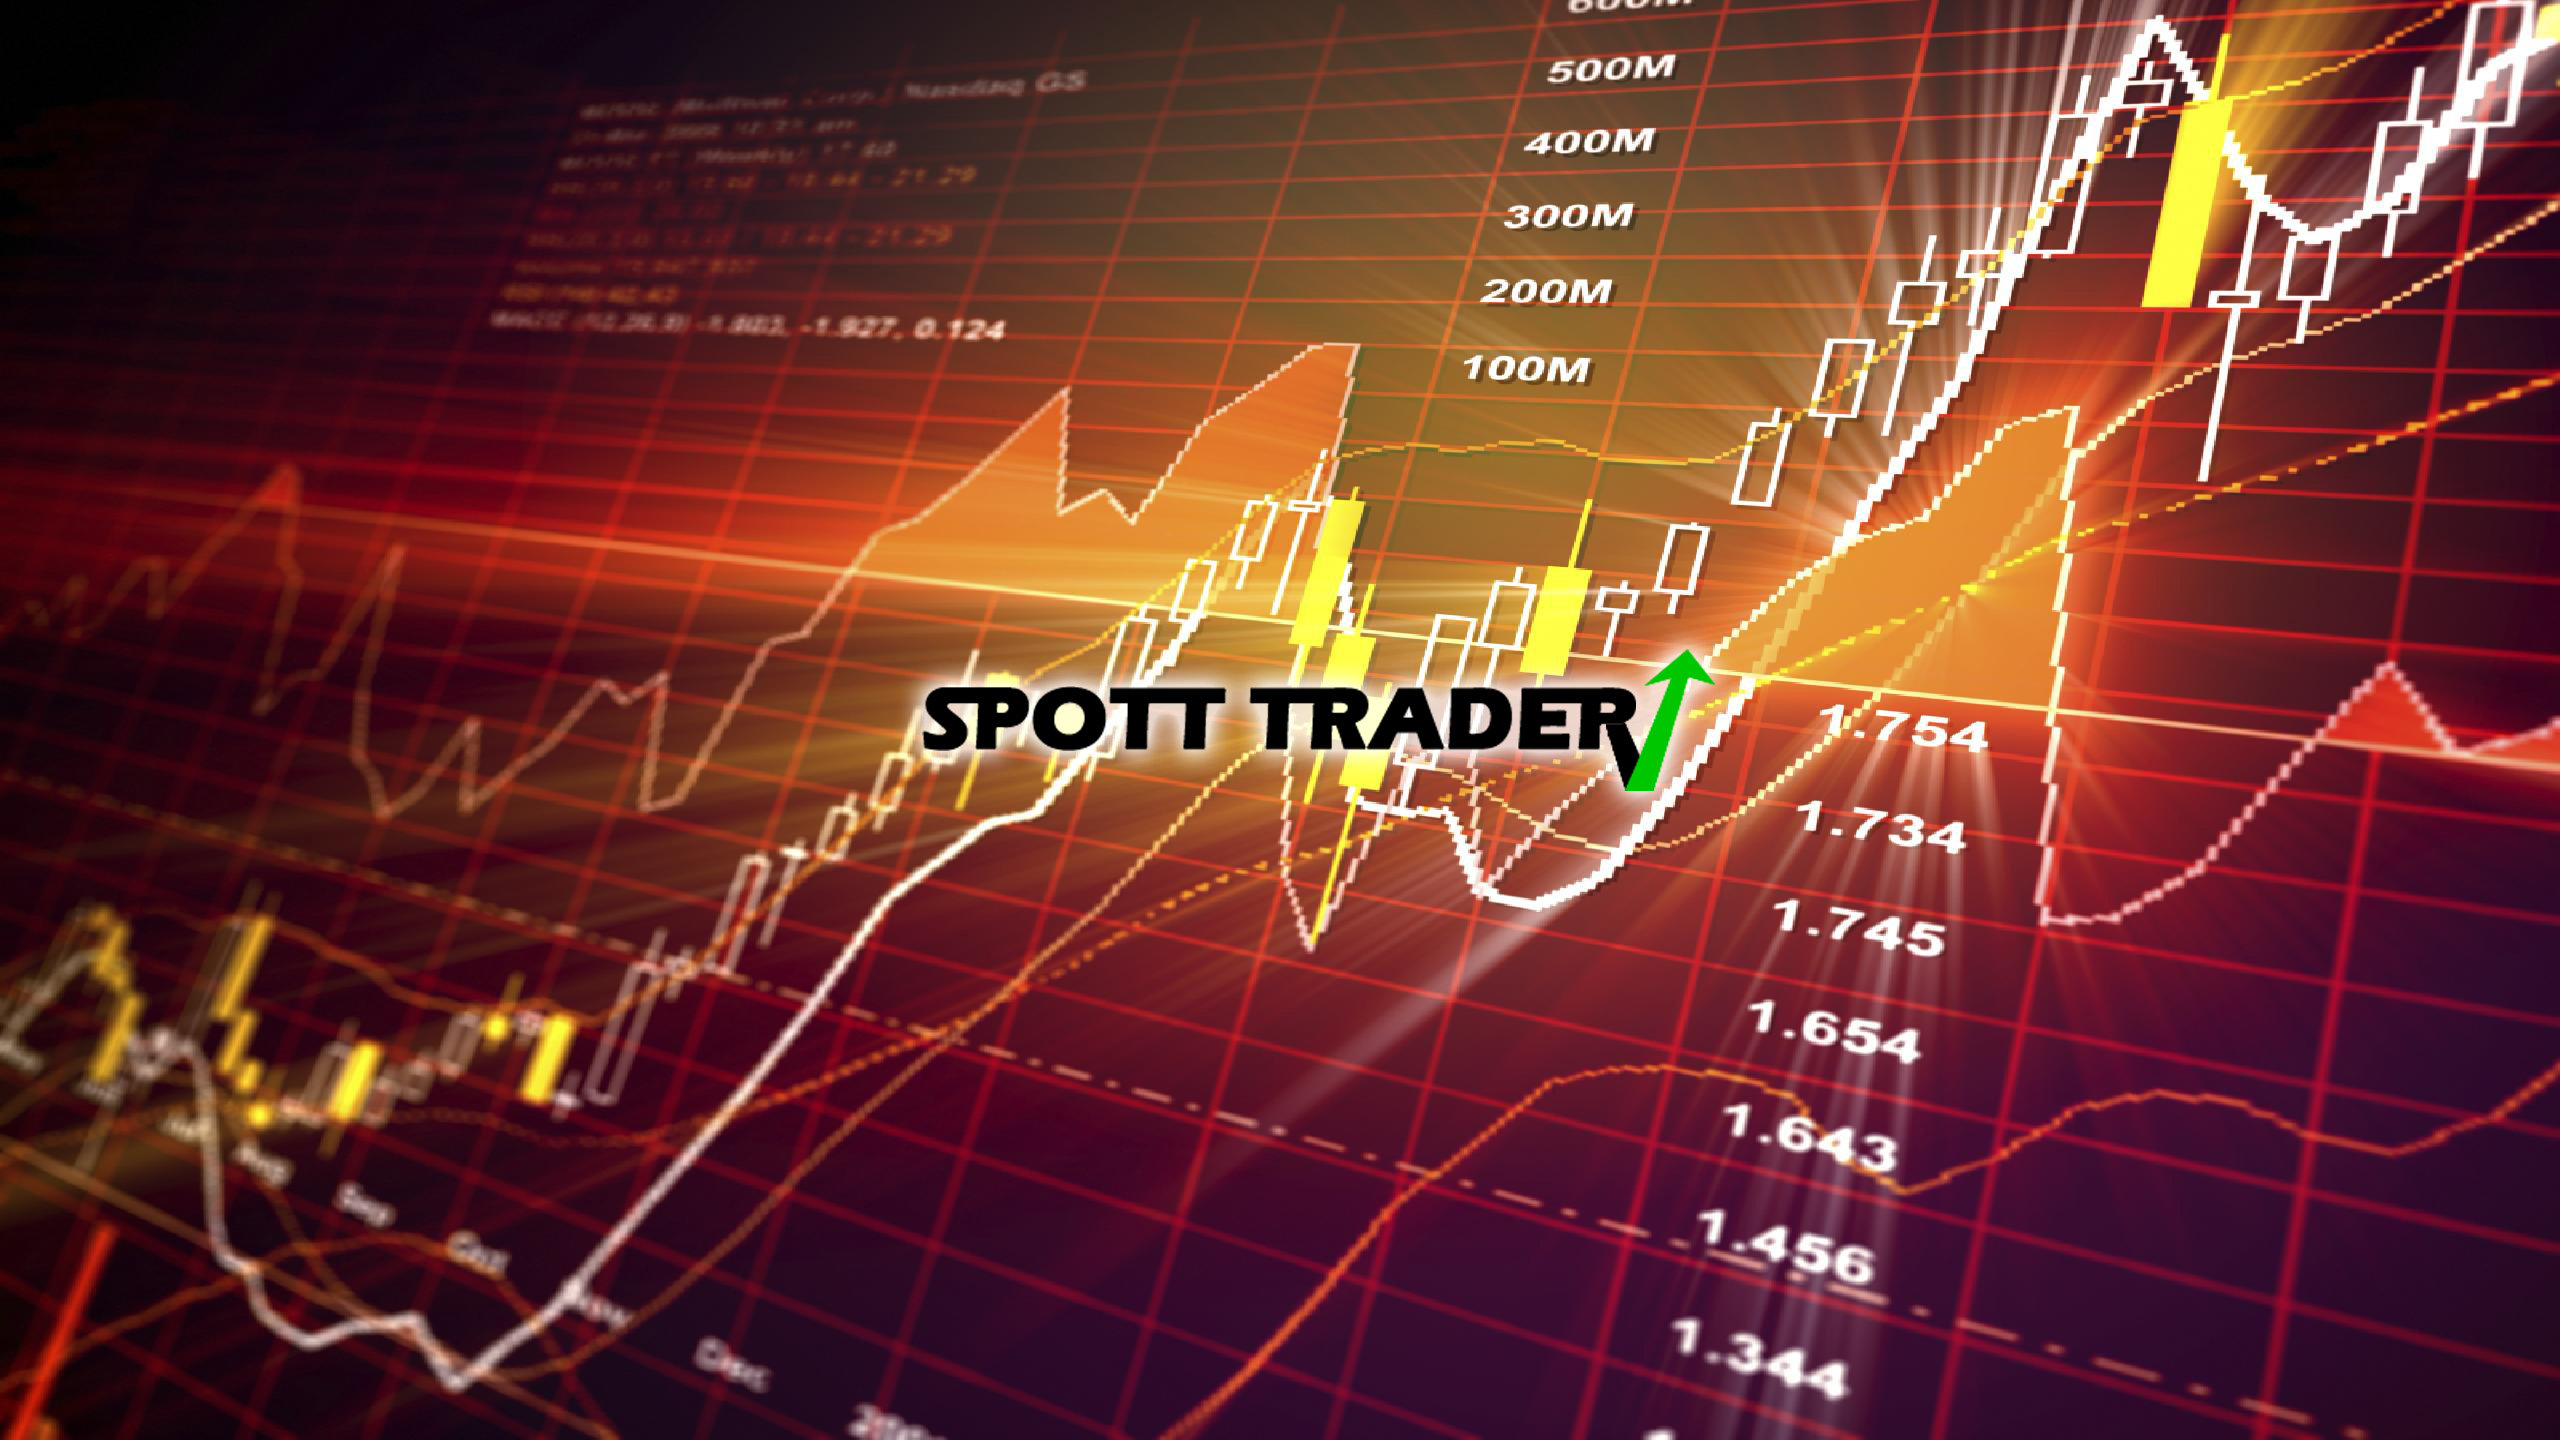 SpoTT Trader - Bear Bull Traders Forums